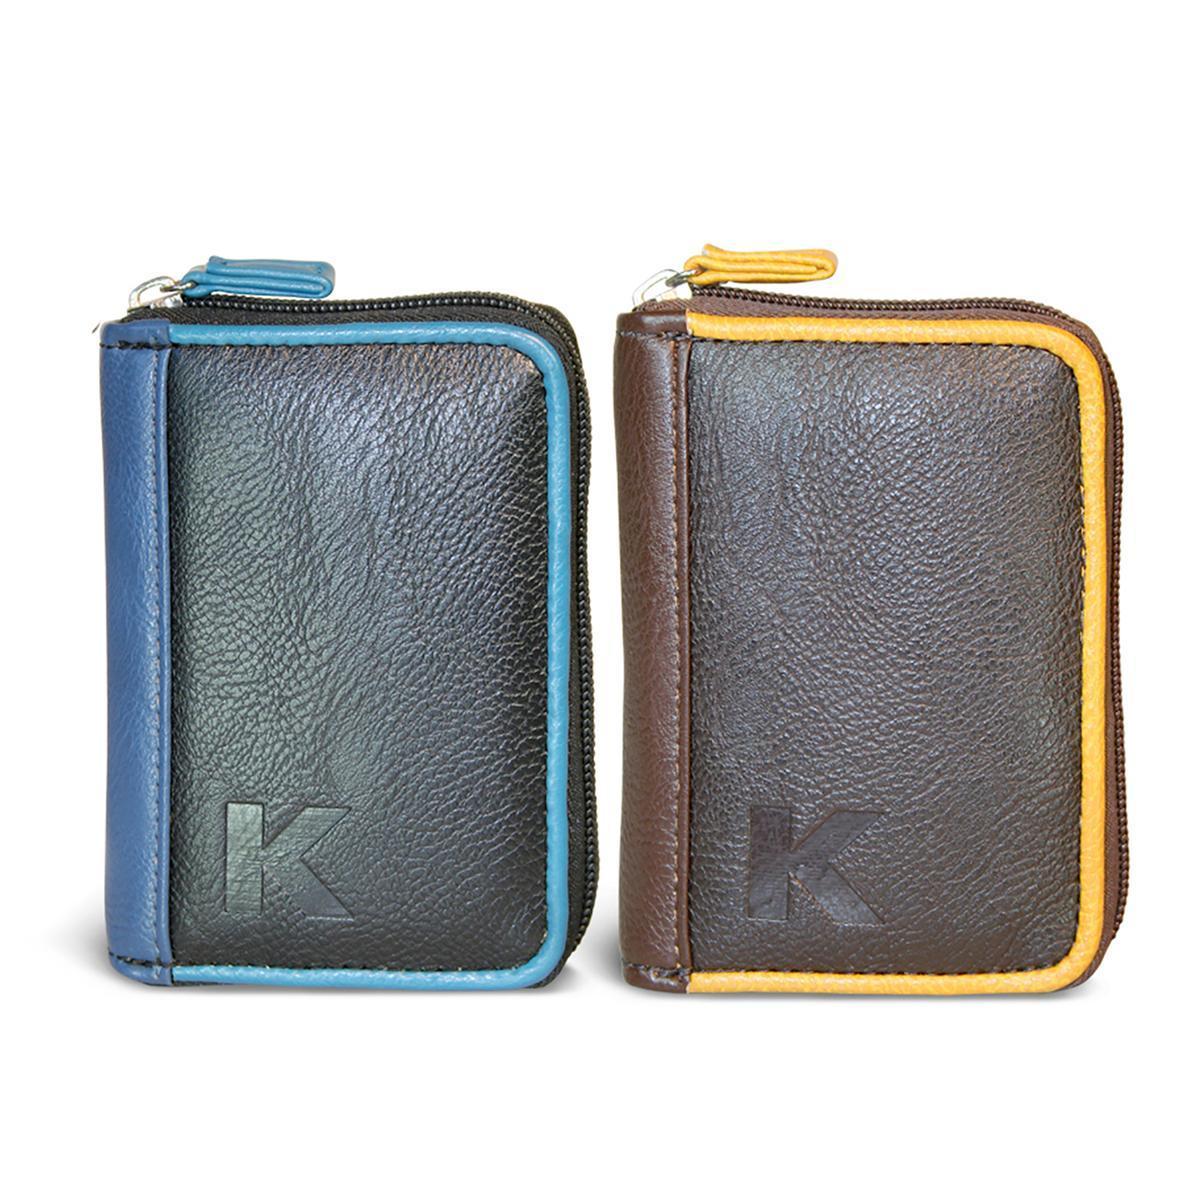 Porte-cartes simili cuir et textile zip central - L 12 x H 8.5x 2.5 cm